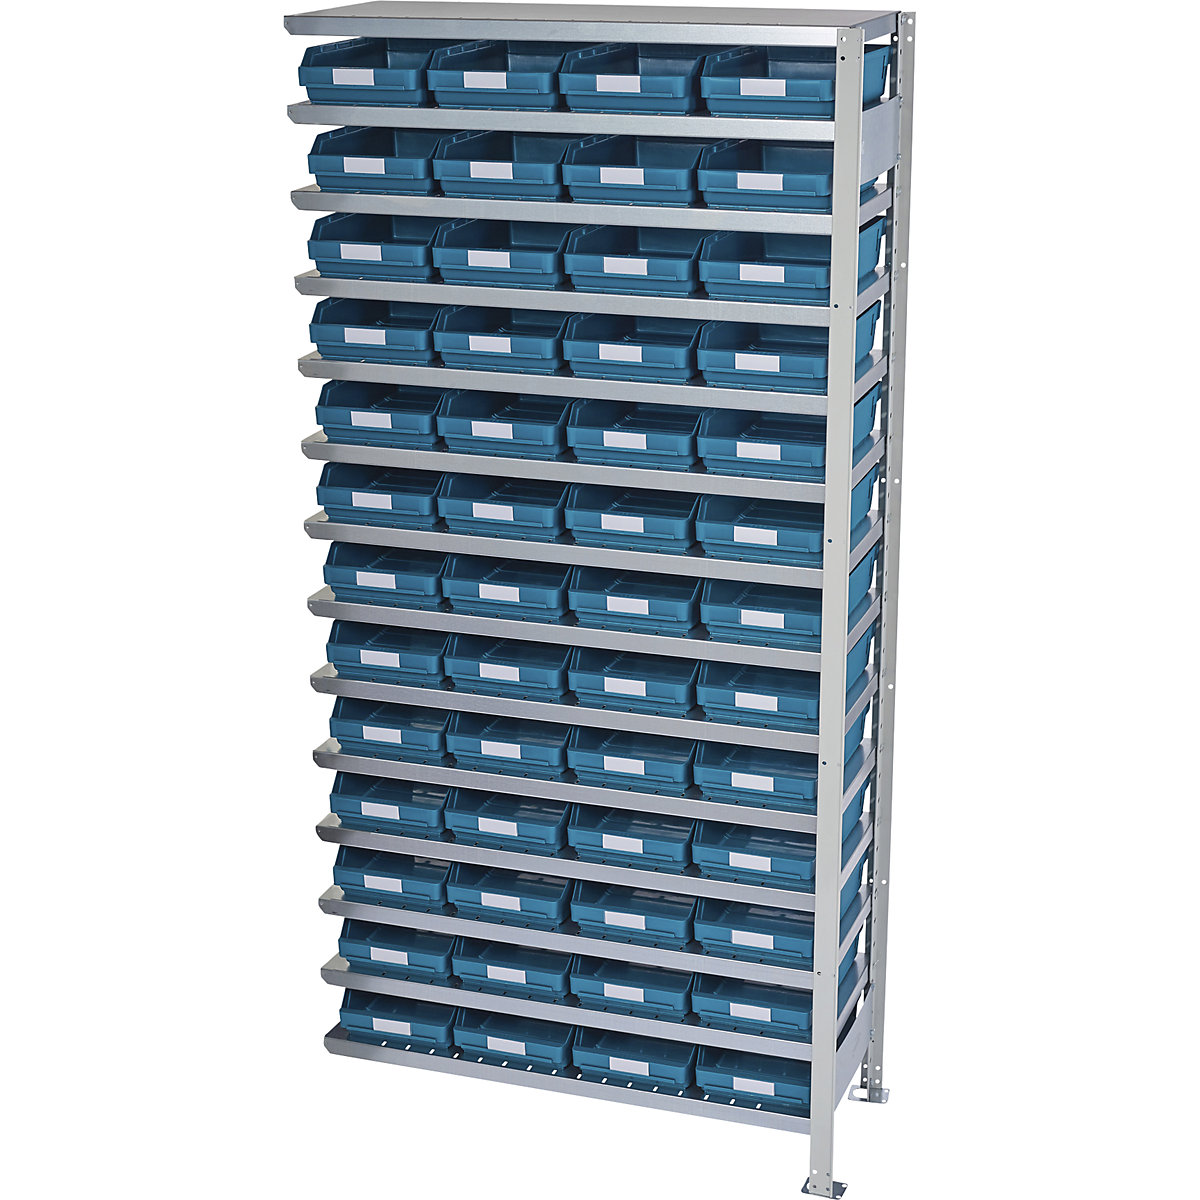 Estante de encaixar com caixas para estante – STEMO, altura da estante 2100 mm, estante adicional, profundidade 300 mm, 52 caixas verdes-25